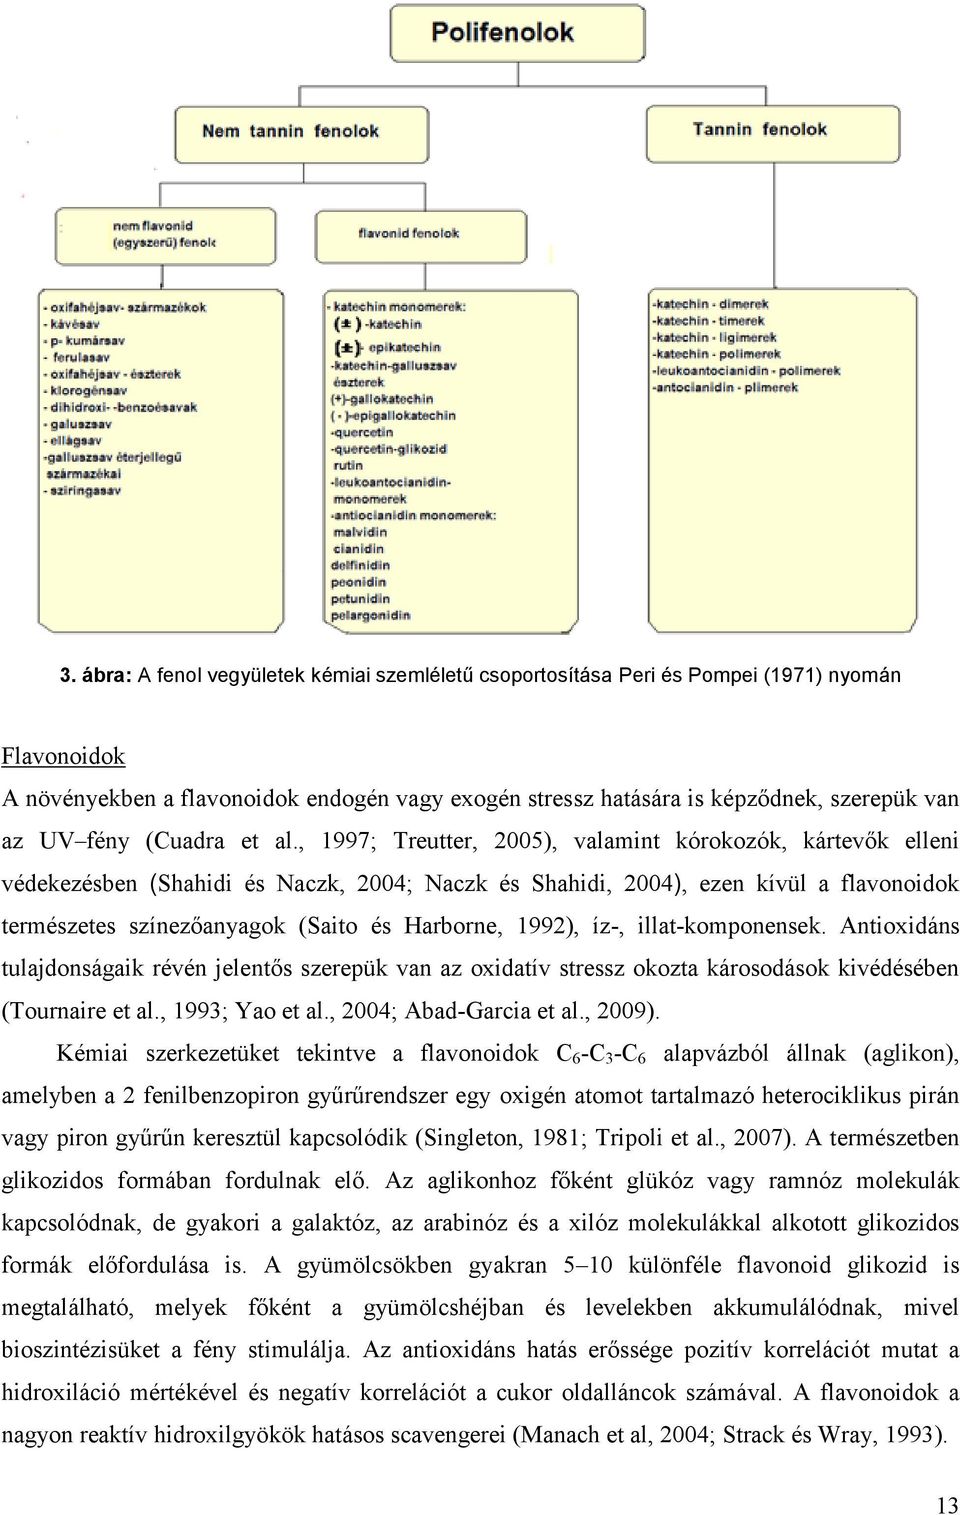 , 1997; Treutter, 25), valamint kórokozók, kártevők elleni védekezésben (Shahidi és Naczk, 24; Naczk és Shahidi, 24), ezen kívül a flavonoidok természetes színezőanyagok (Saito és Harborne, 1992),